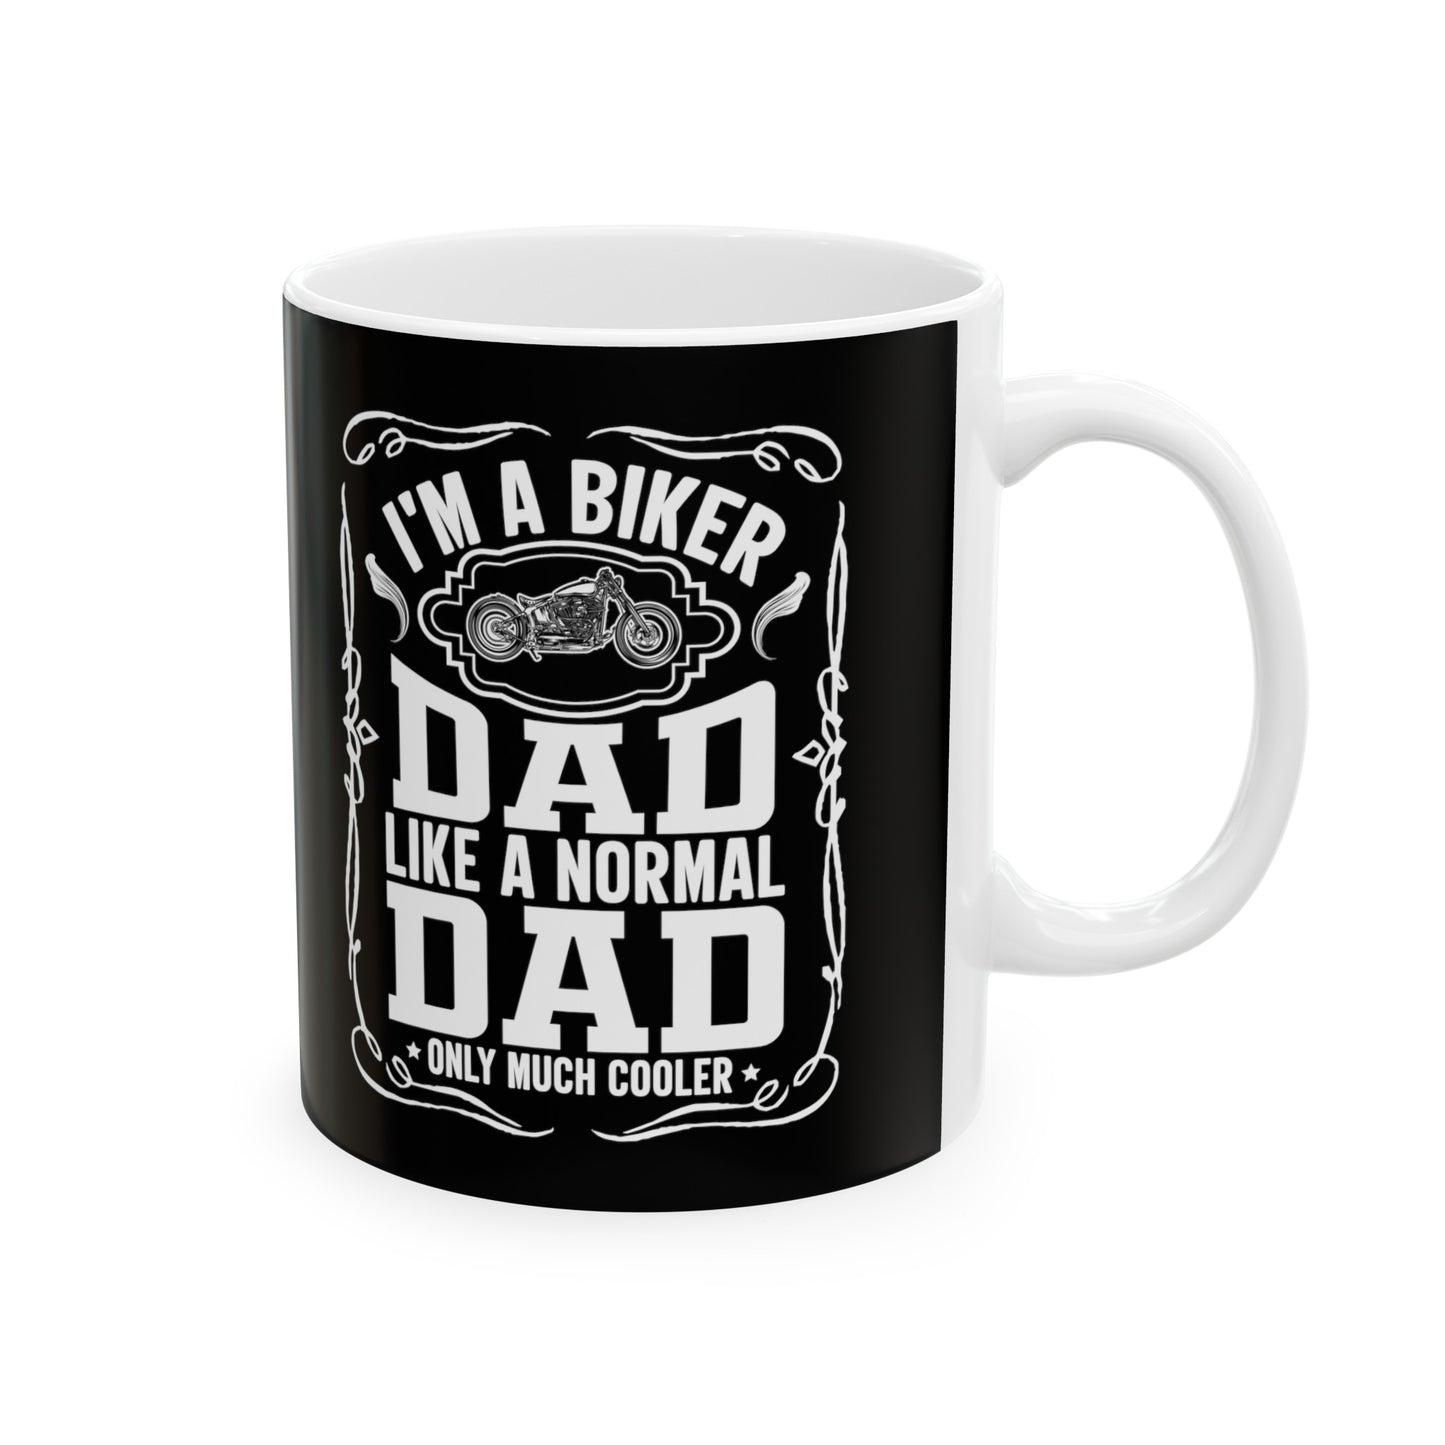 Biker Dad Like a Normal Dad Only Much Cooler Ceramic Mug, (11oz, 15oz)